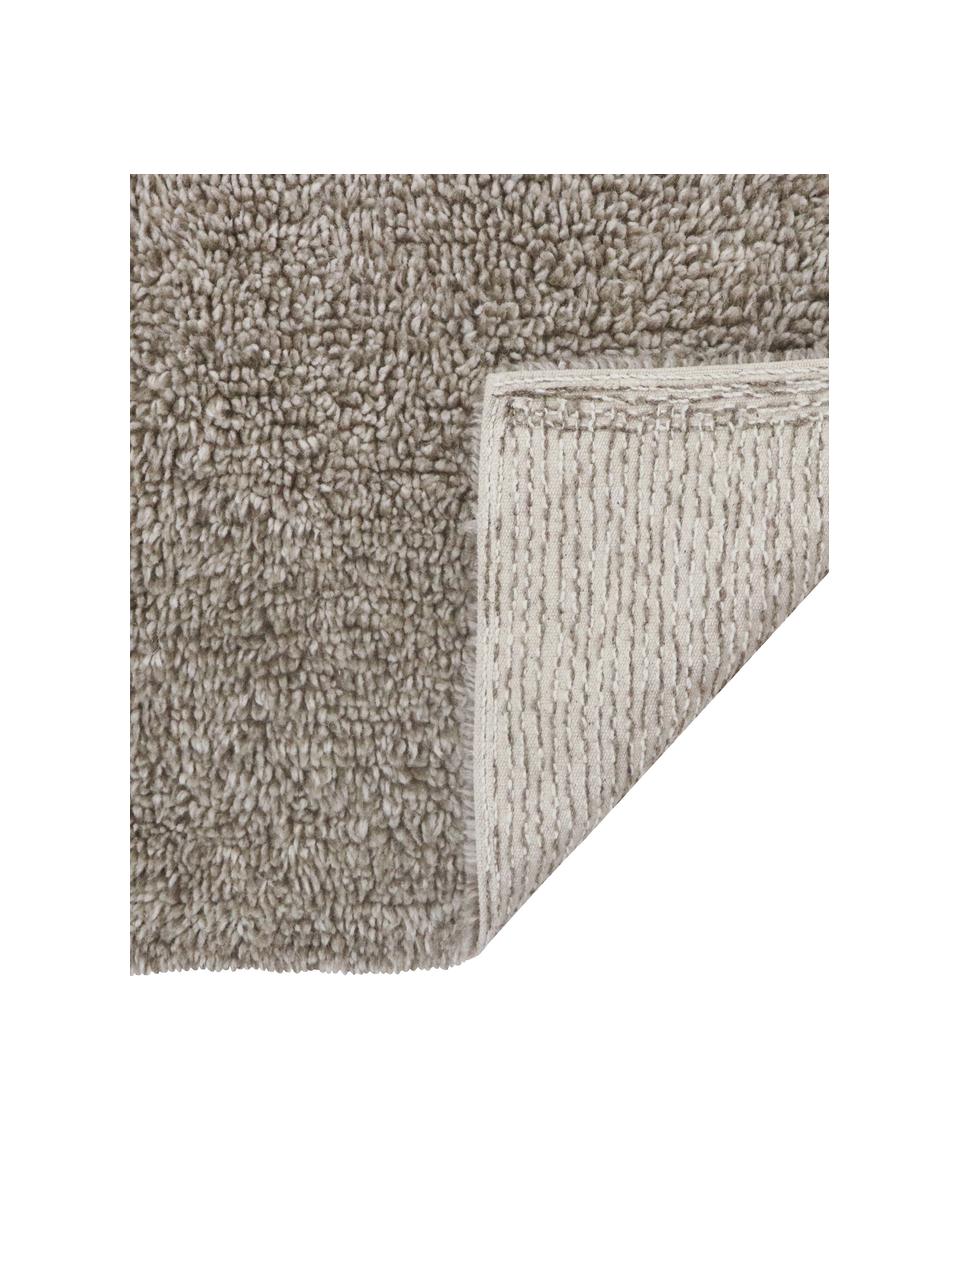 Handgefertigter Wollteppich Tundra in Grau, waschbar, Flor: 100% Wolle, Grau, B 80 x L 140 cm (Grösse XS)